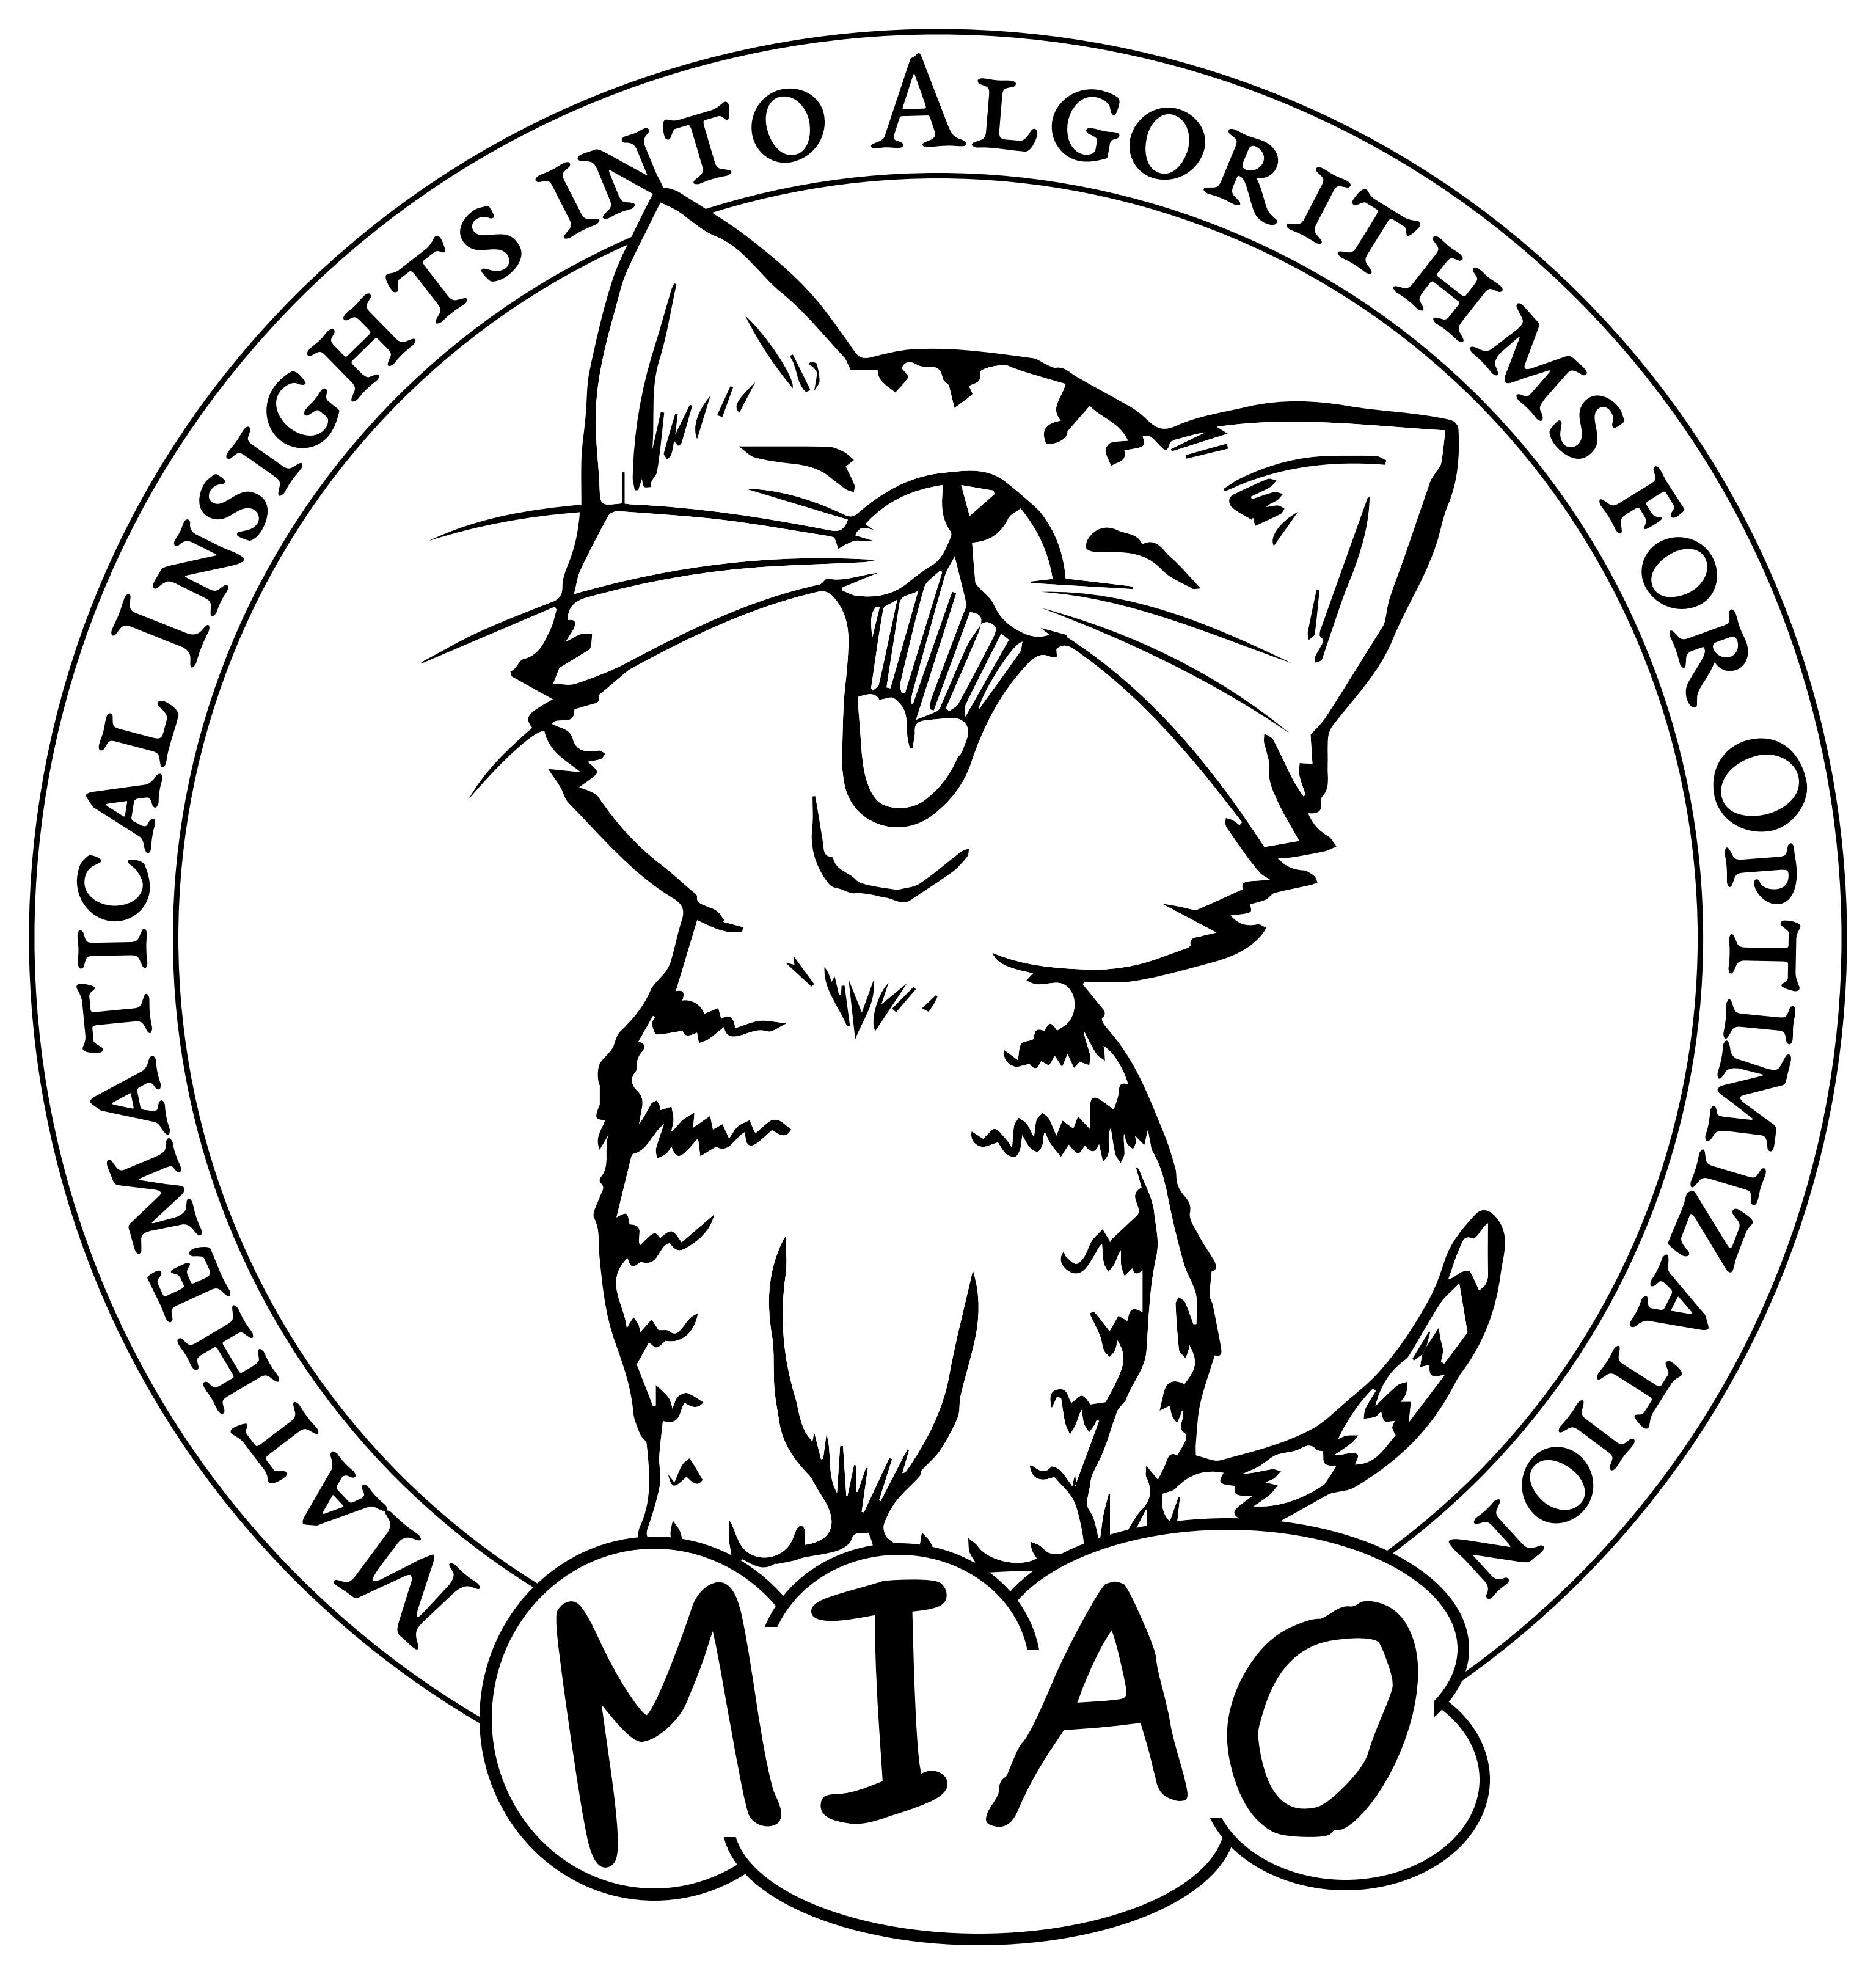 MIAO group logo